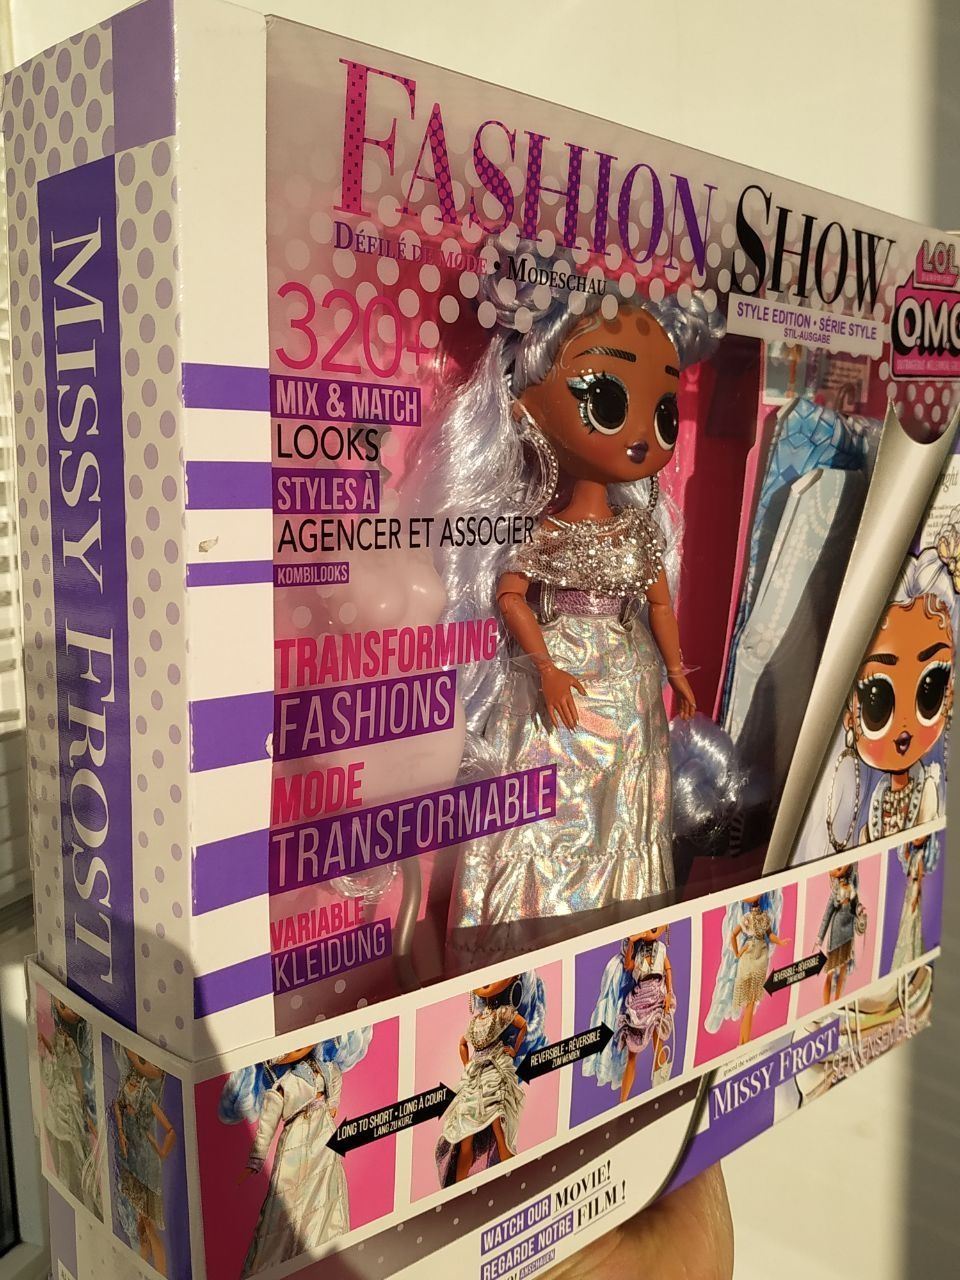 Лялька LOL Surprise Fashion Show Style Missy Frost лол показ мод Міссі